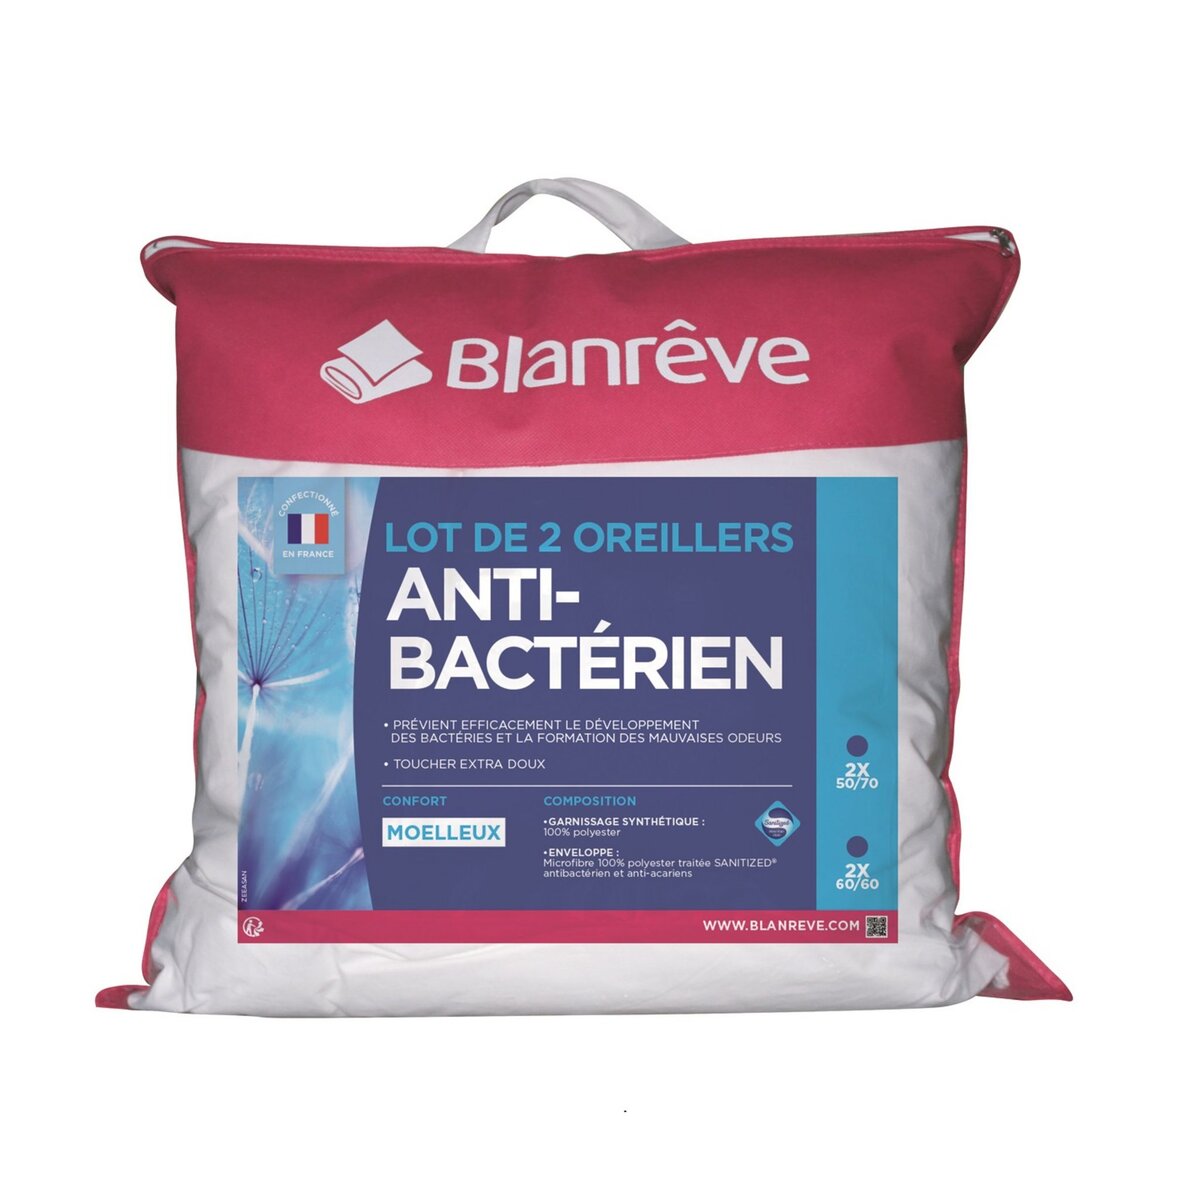 BLANREVE Lot de 2 oreillers moelleux microfibre anti-bactériens sanitized